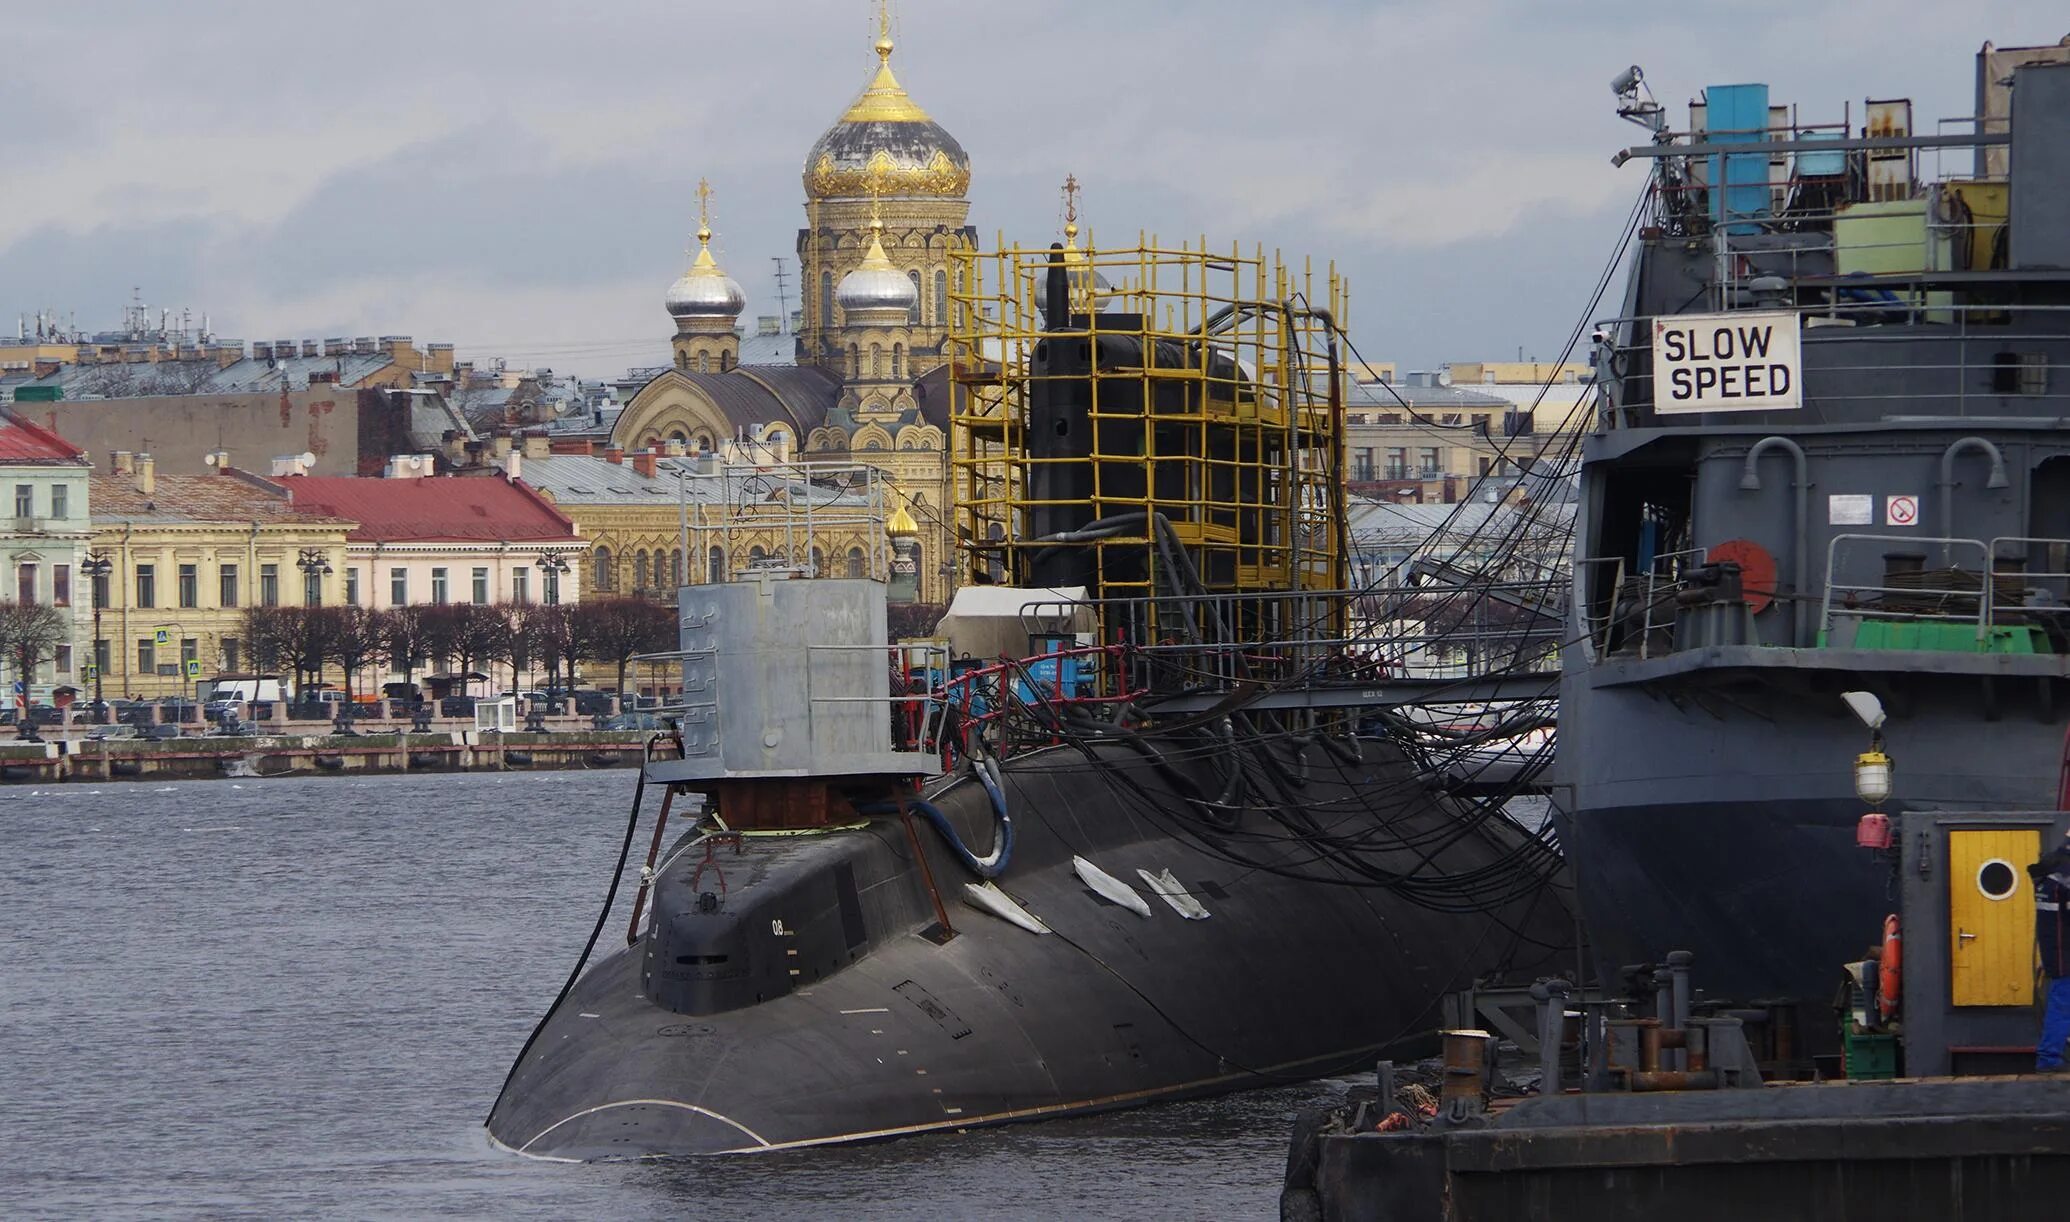 Завод Адмиралтейские верфи Санкт-Петербург. Подводная лодка проекта 636 3 Волхов. Судостроительная компания Адмиралтейские верфи. Подводная лодка Адмиралтейские верфи.